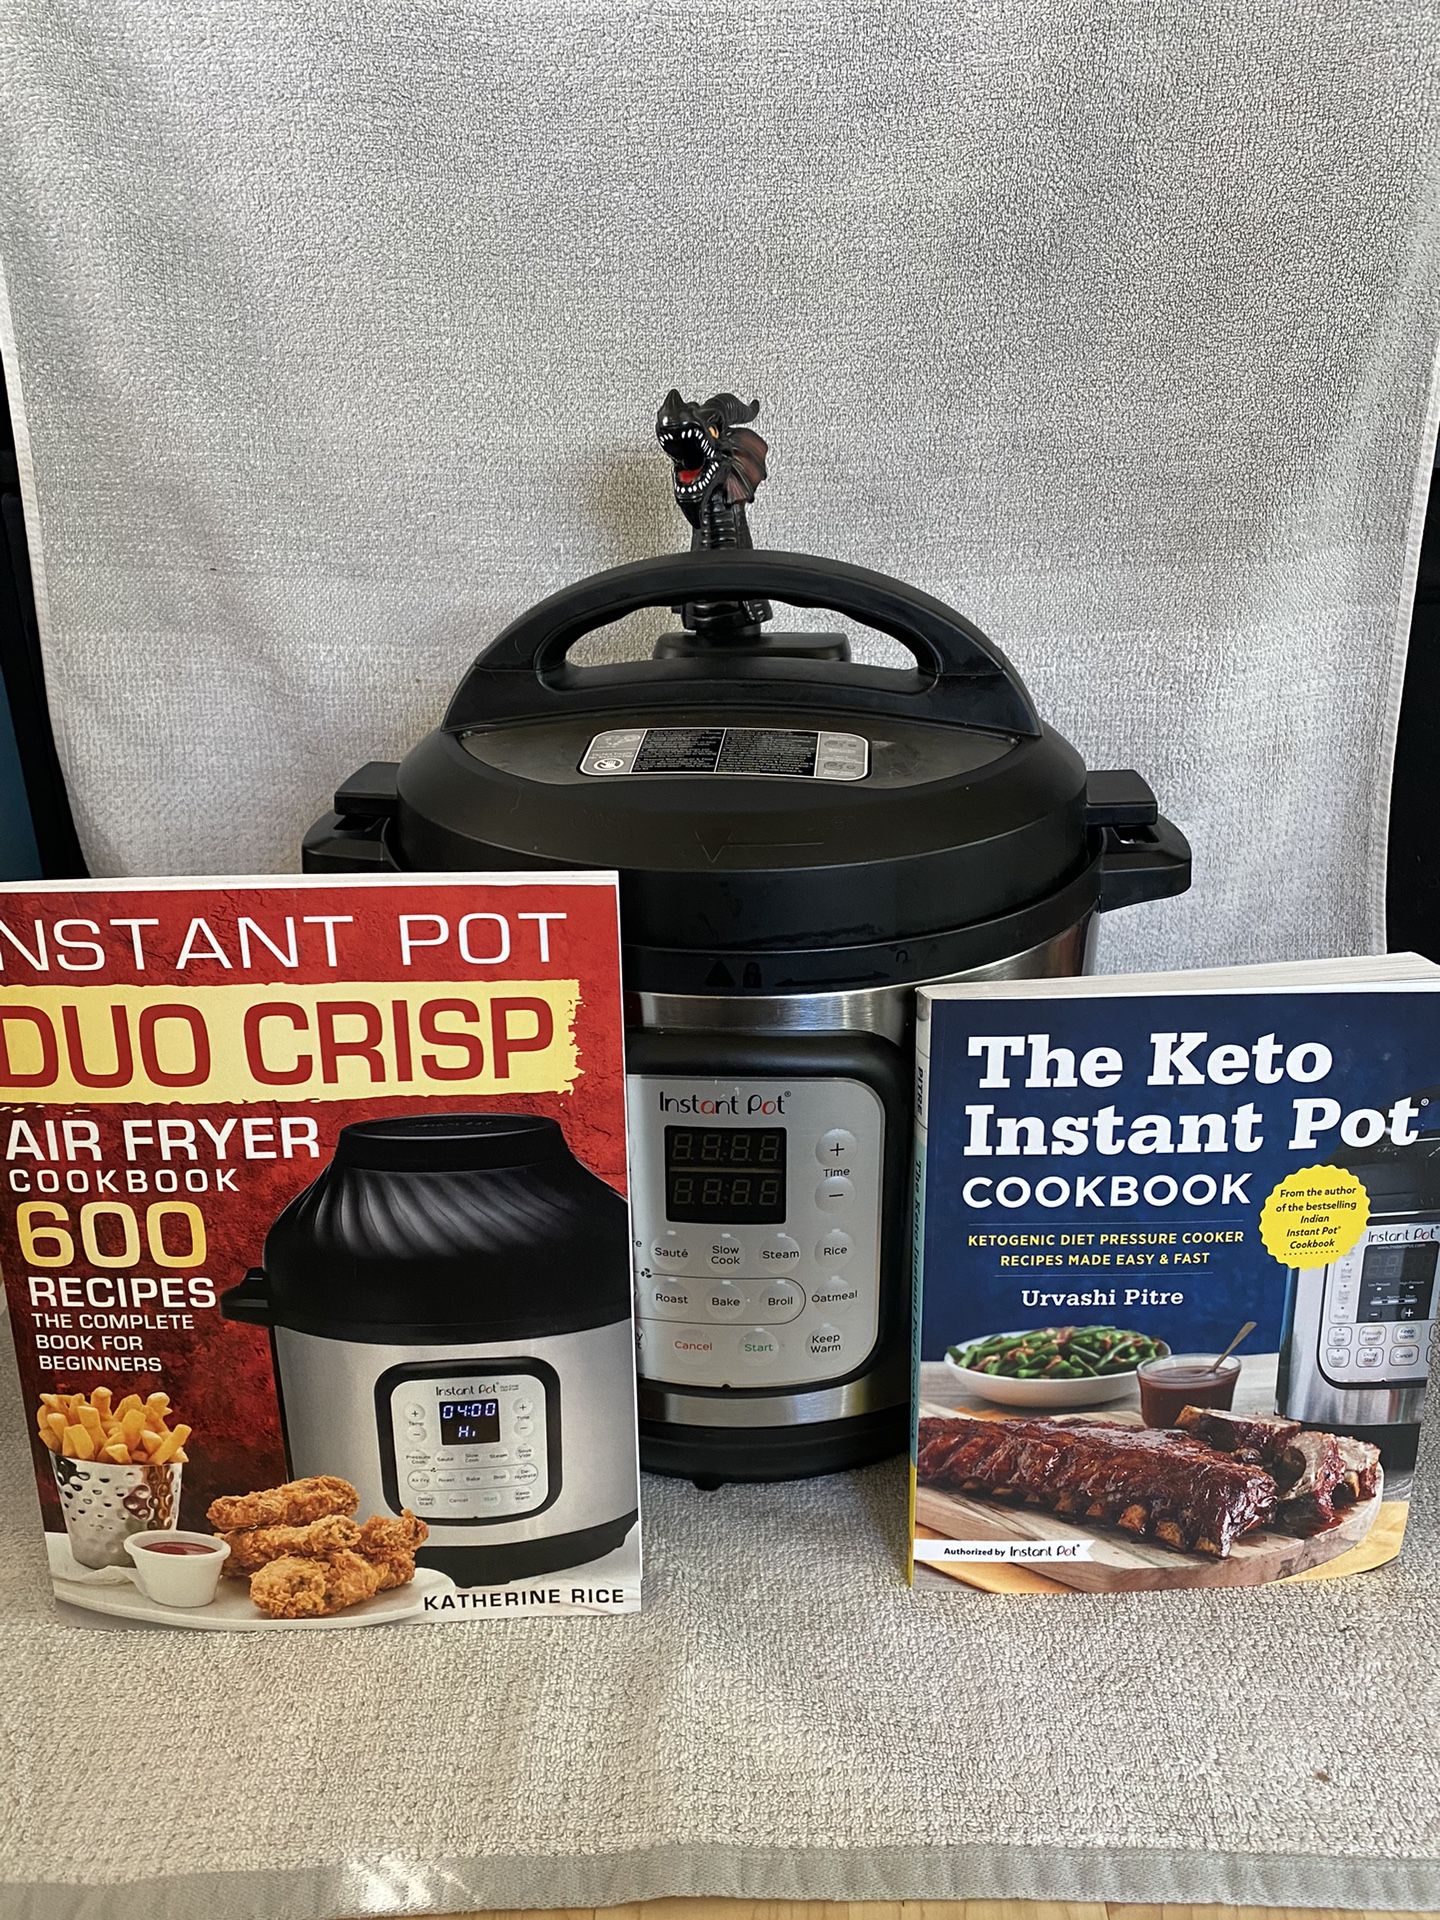 Instant Pot Duo Crisp + Air Fryer! With Dragon Steam Spout & 2 Cookbooks!